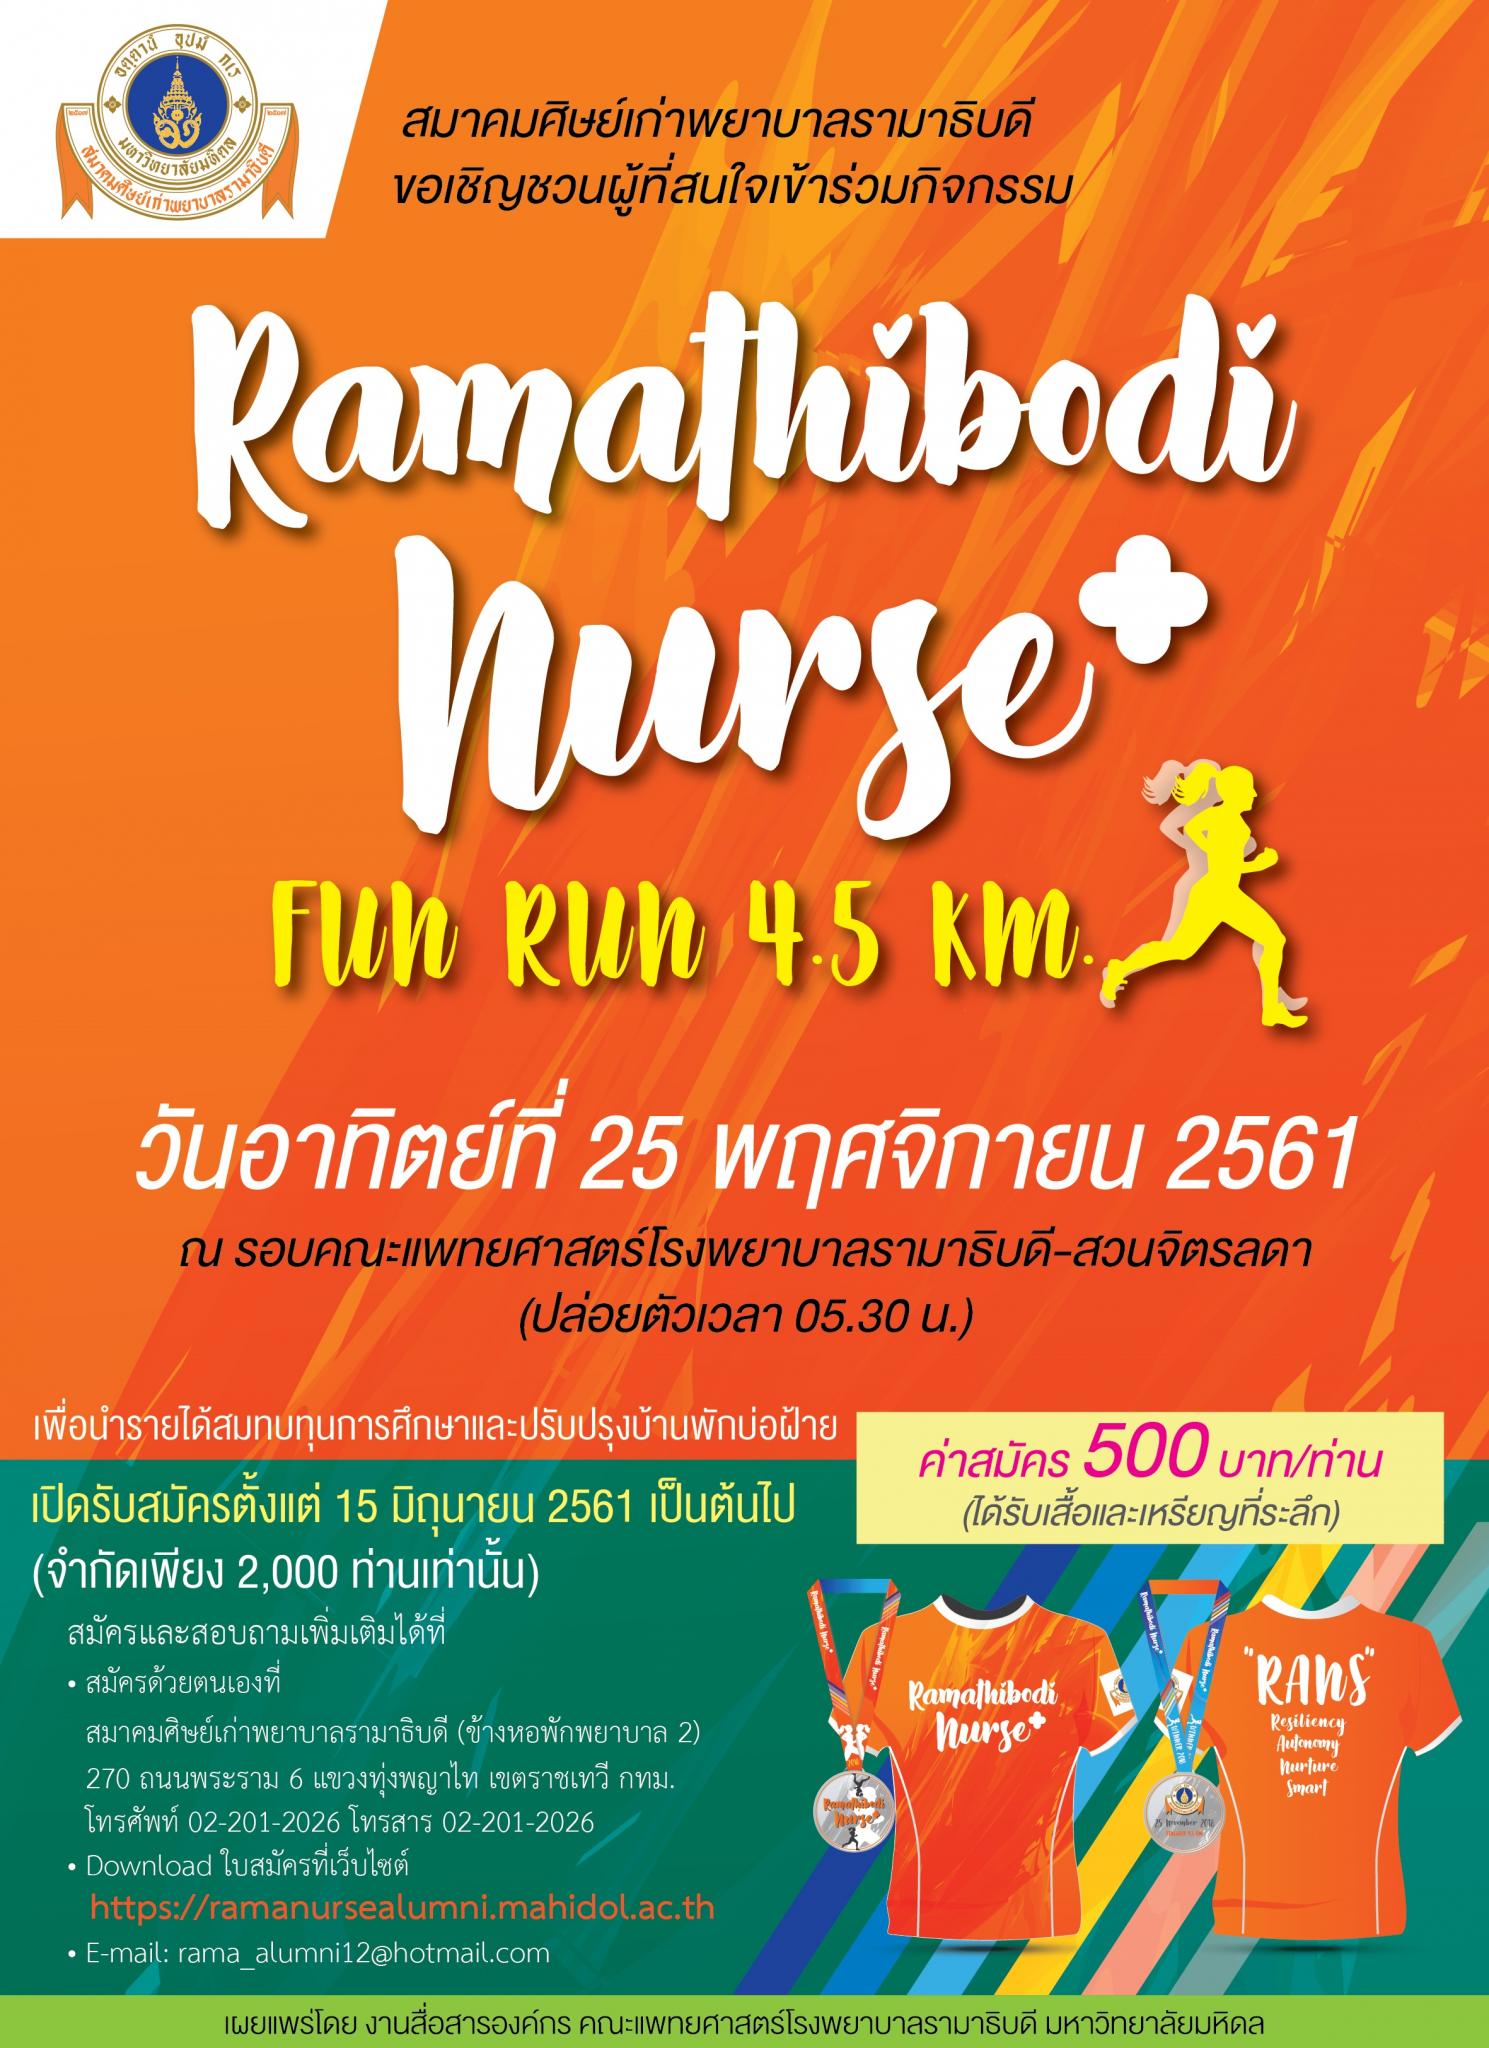 สมาคมศิษย์เก่าพยาบาลรามาธิบดี เชิญร่วมกิจกรรม Ramathibodi nurse+ fun run 4.5 km.